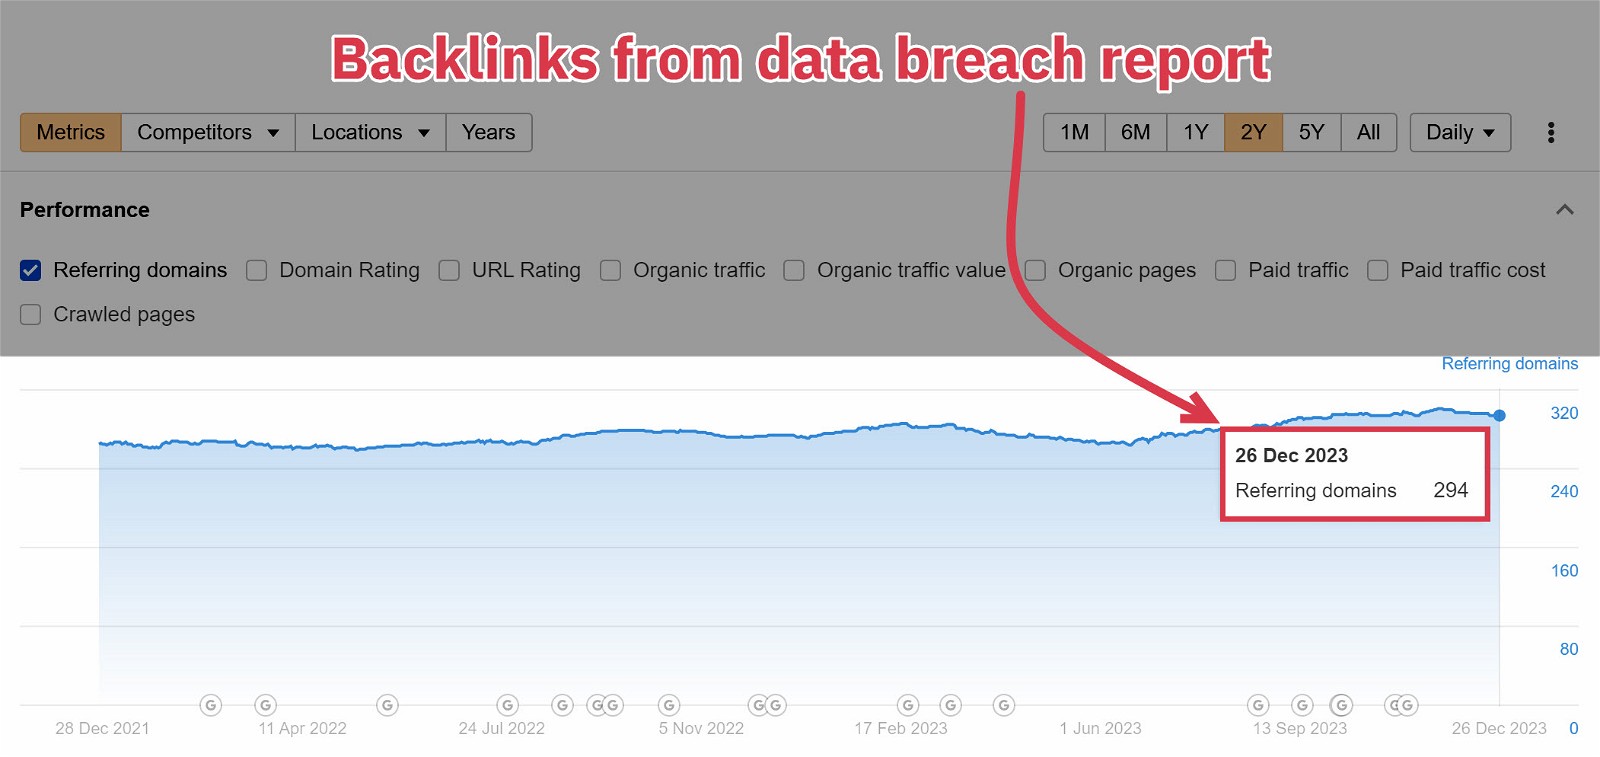 VPNMentor Data Breach Report Backlinks